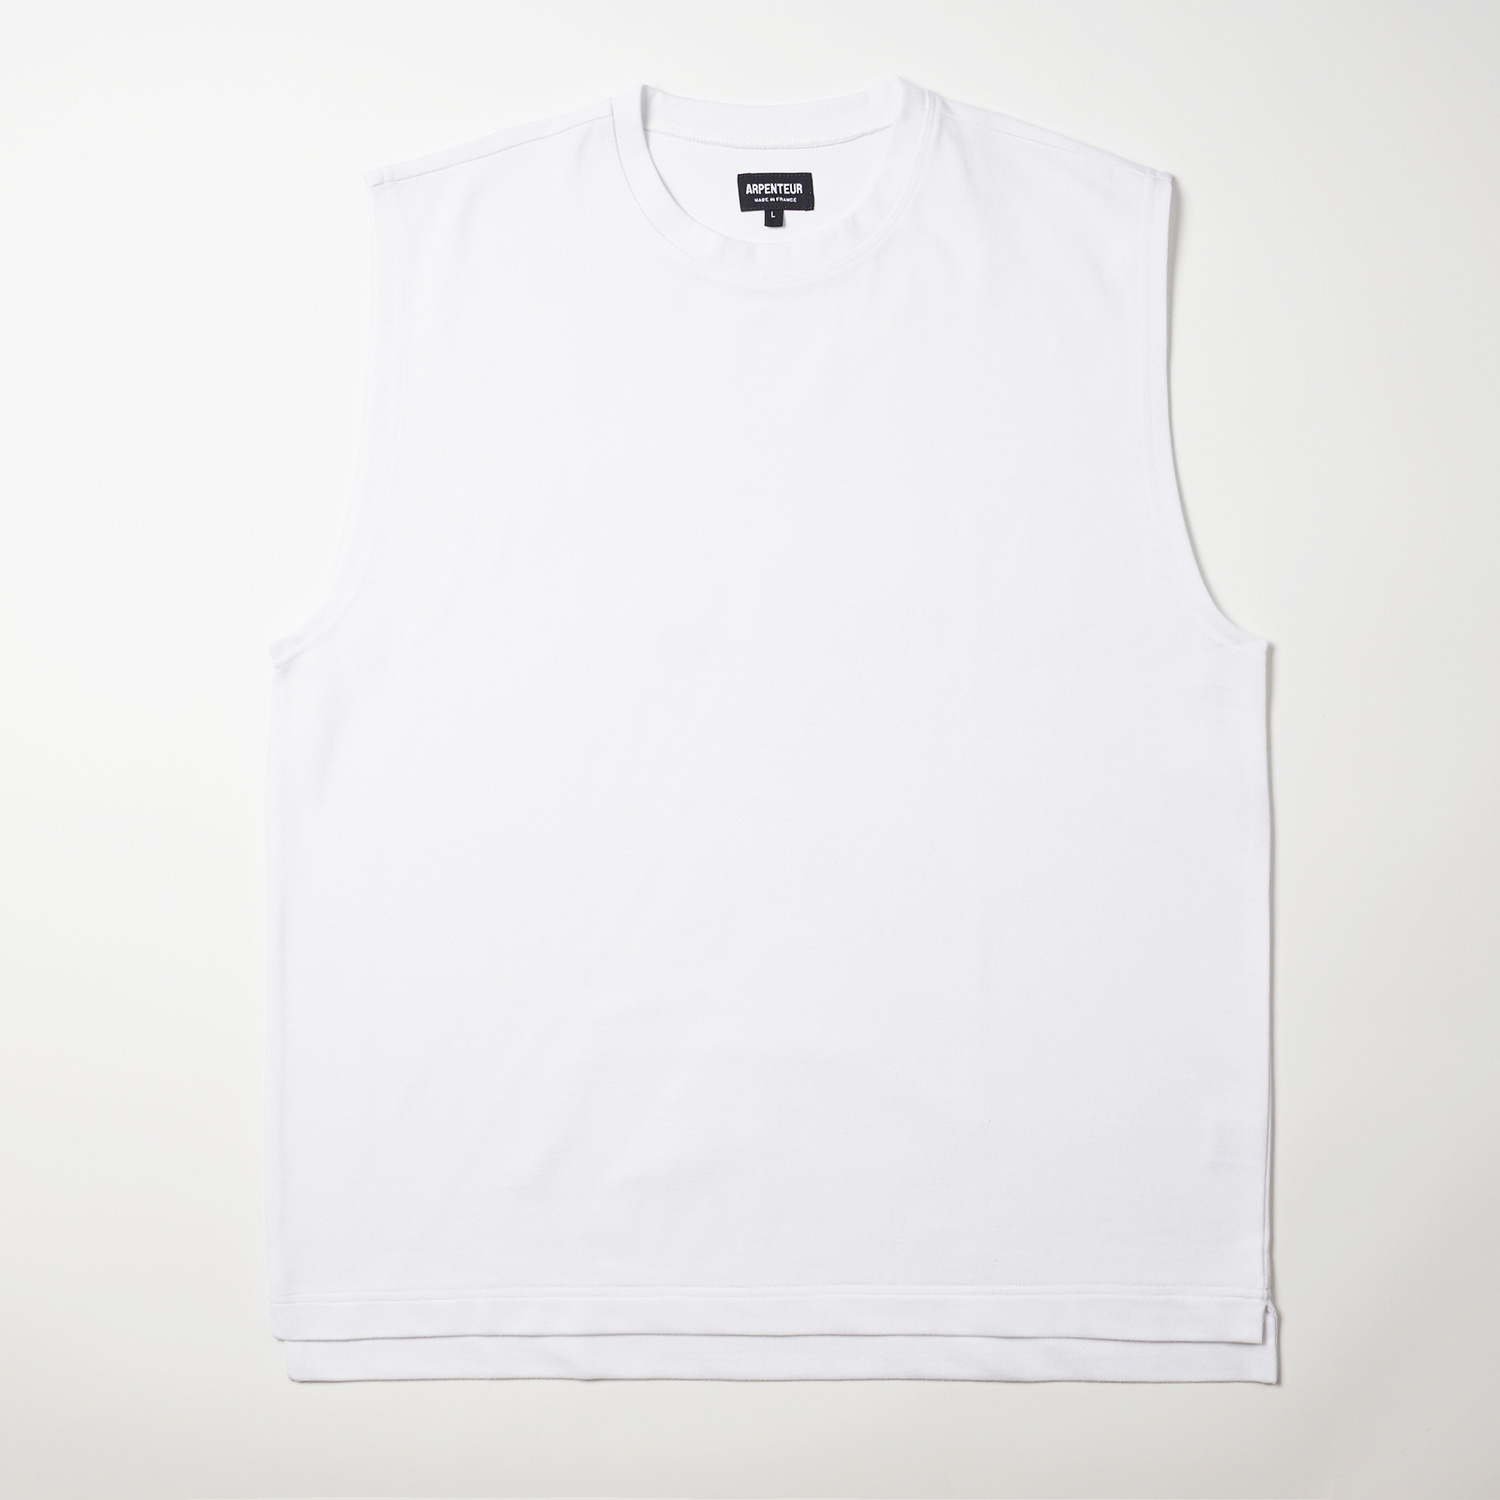 T-shirt Aria coloris Blanc par Arpenteur